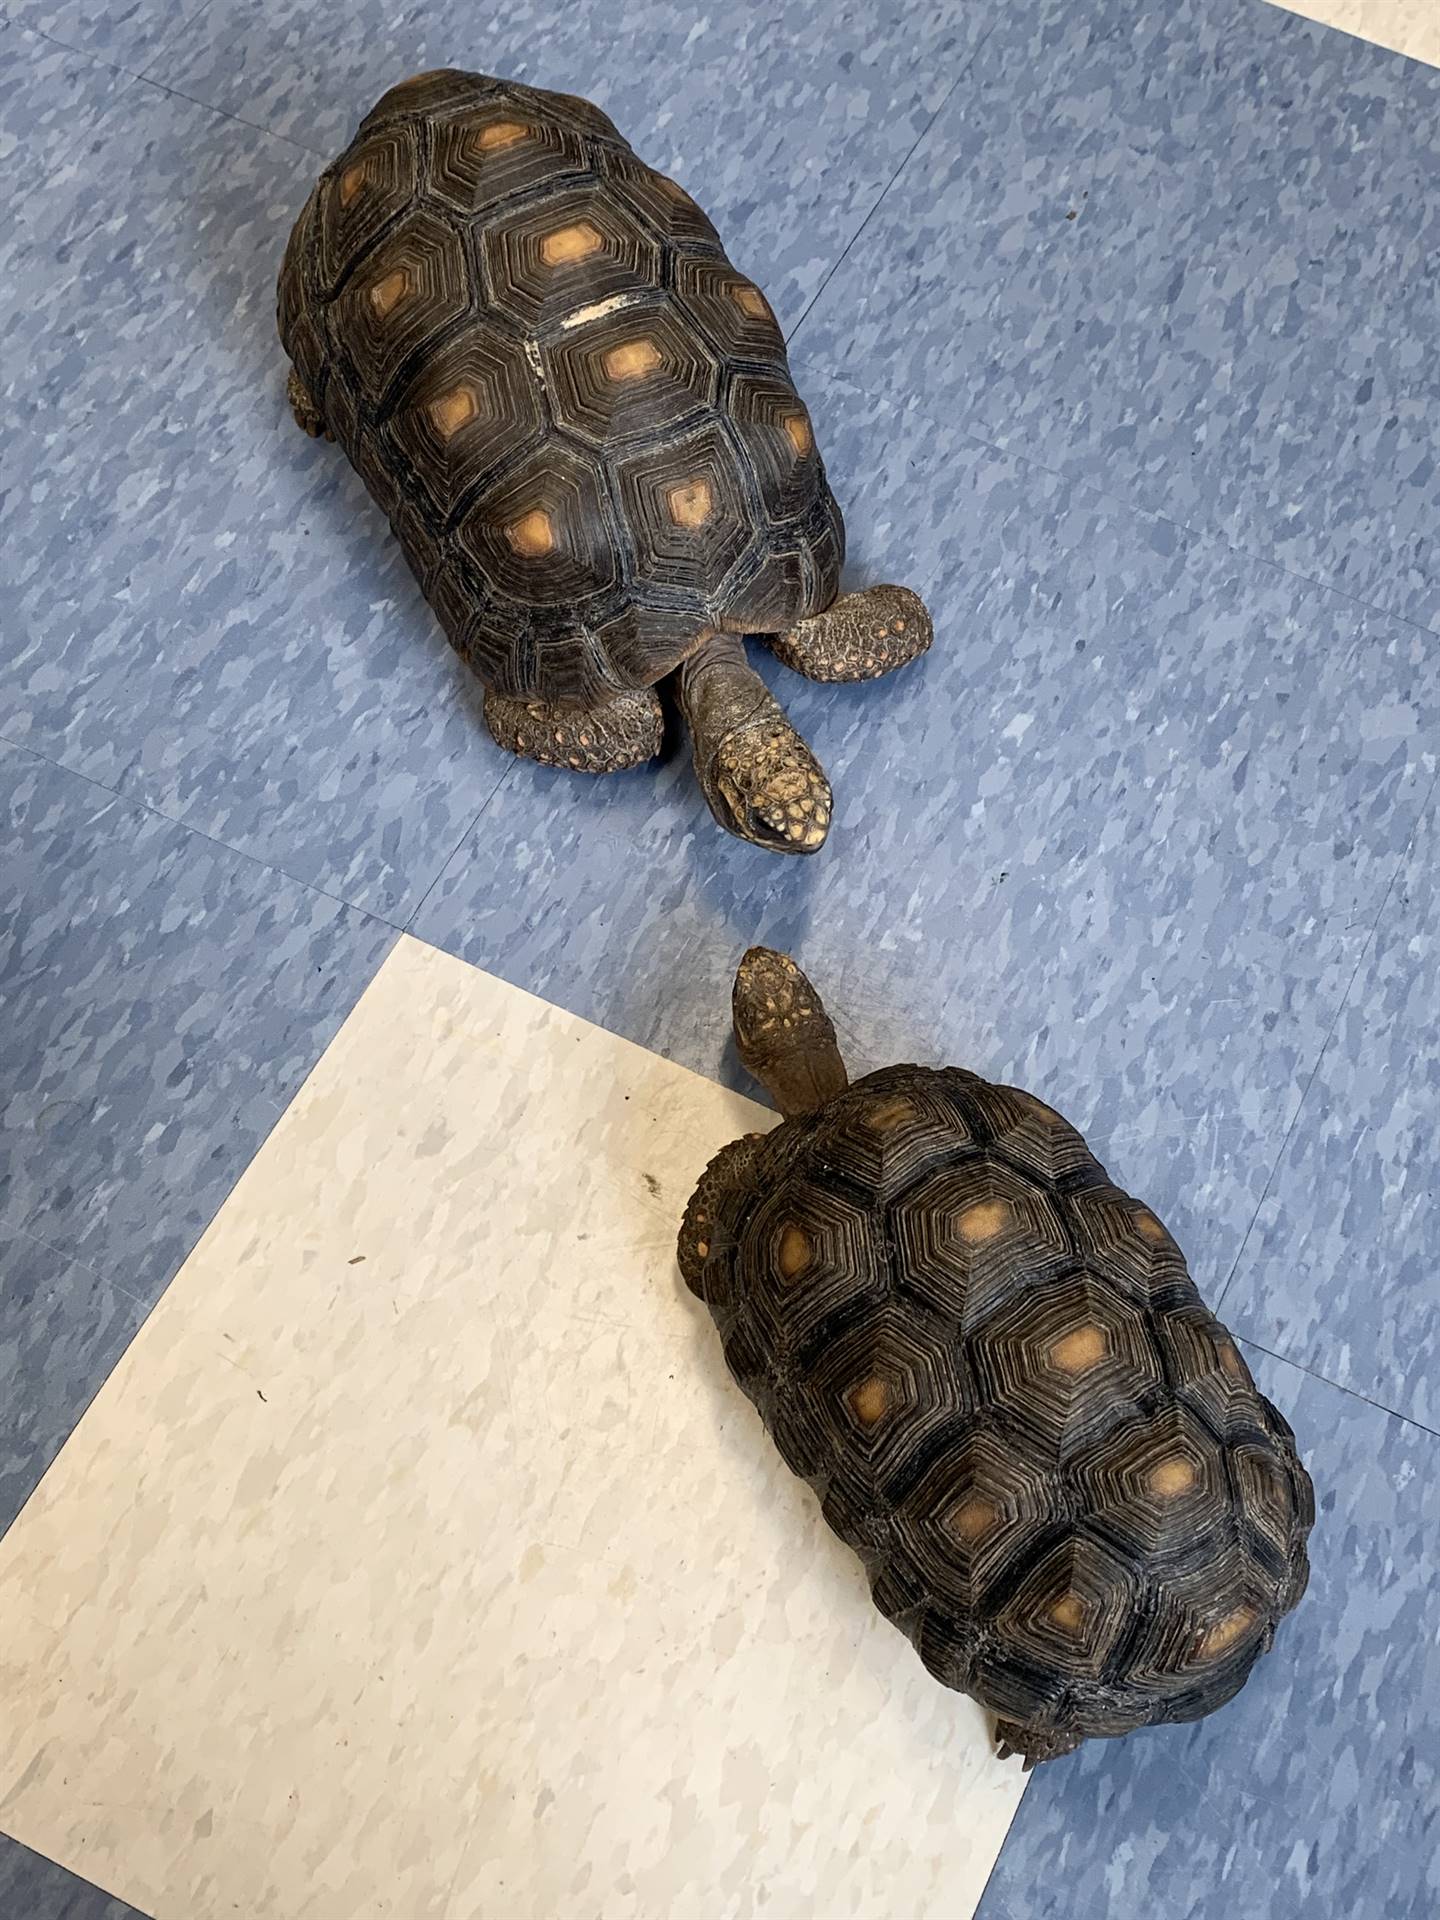 2 tortoise friends